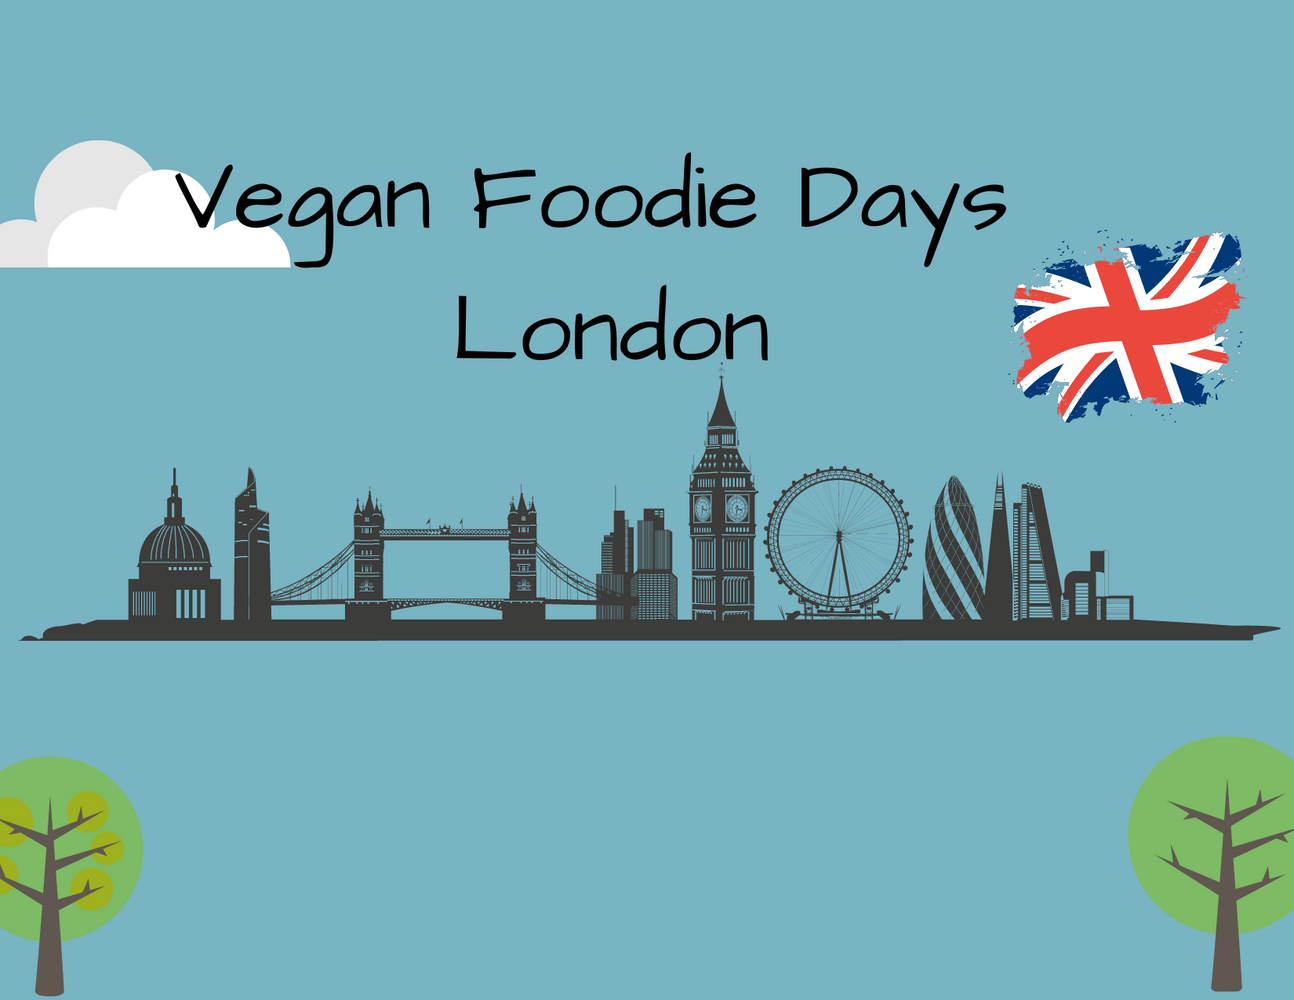 Vegan Foodie Days in London